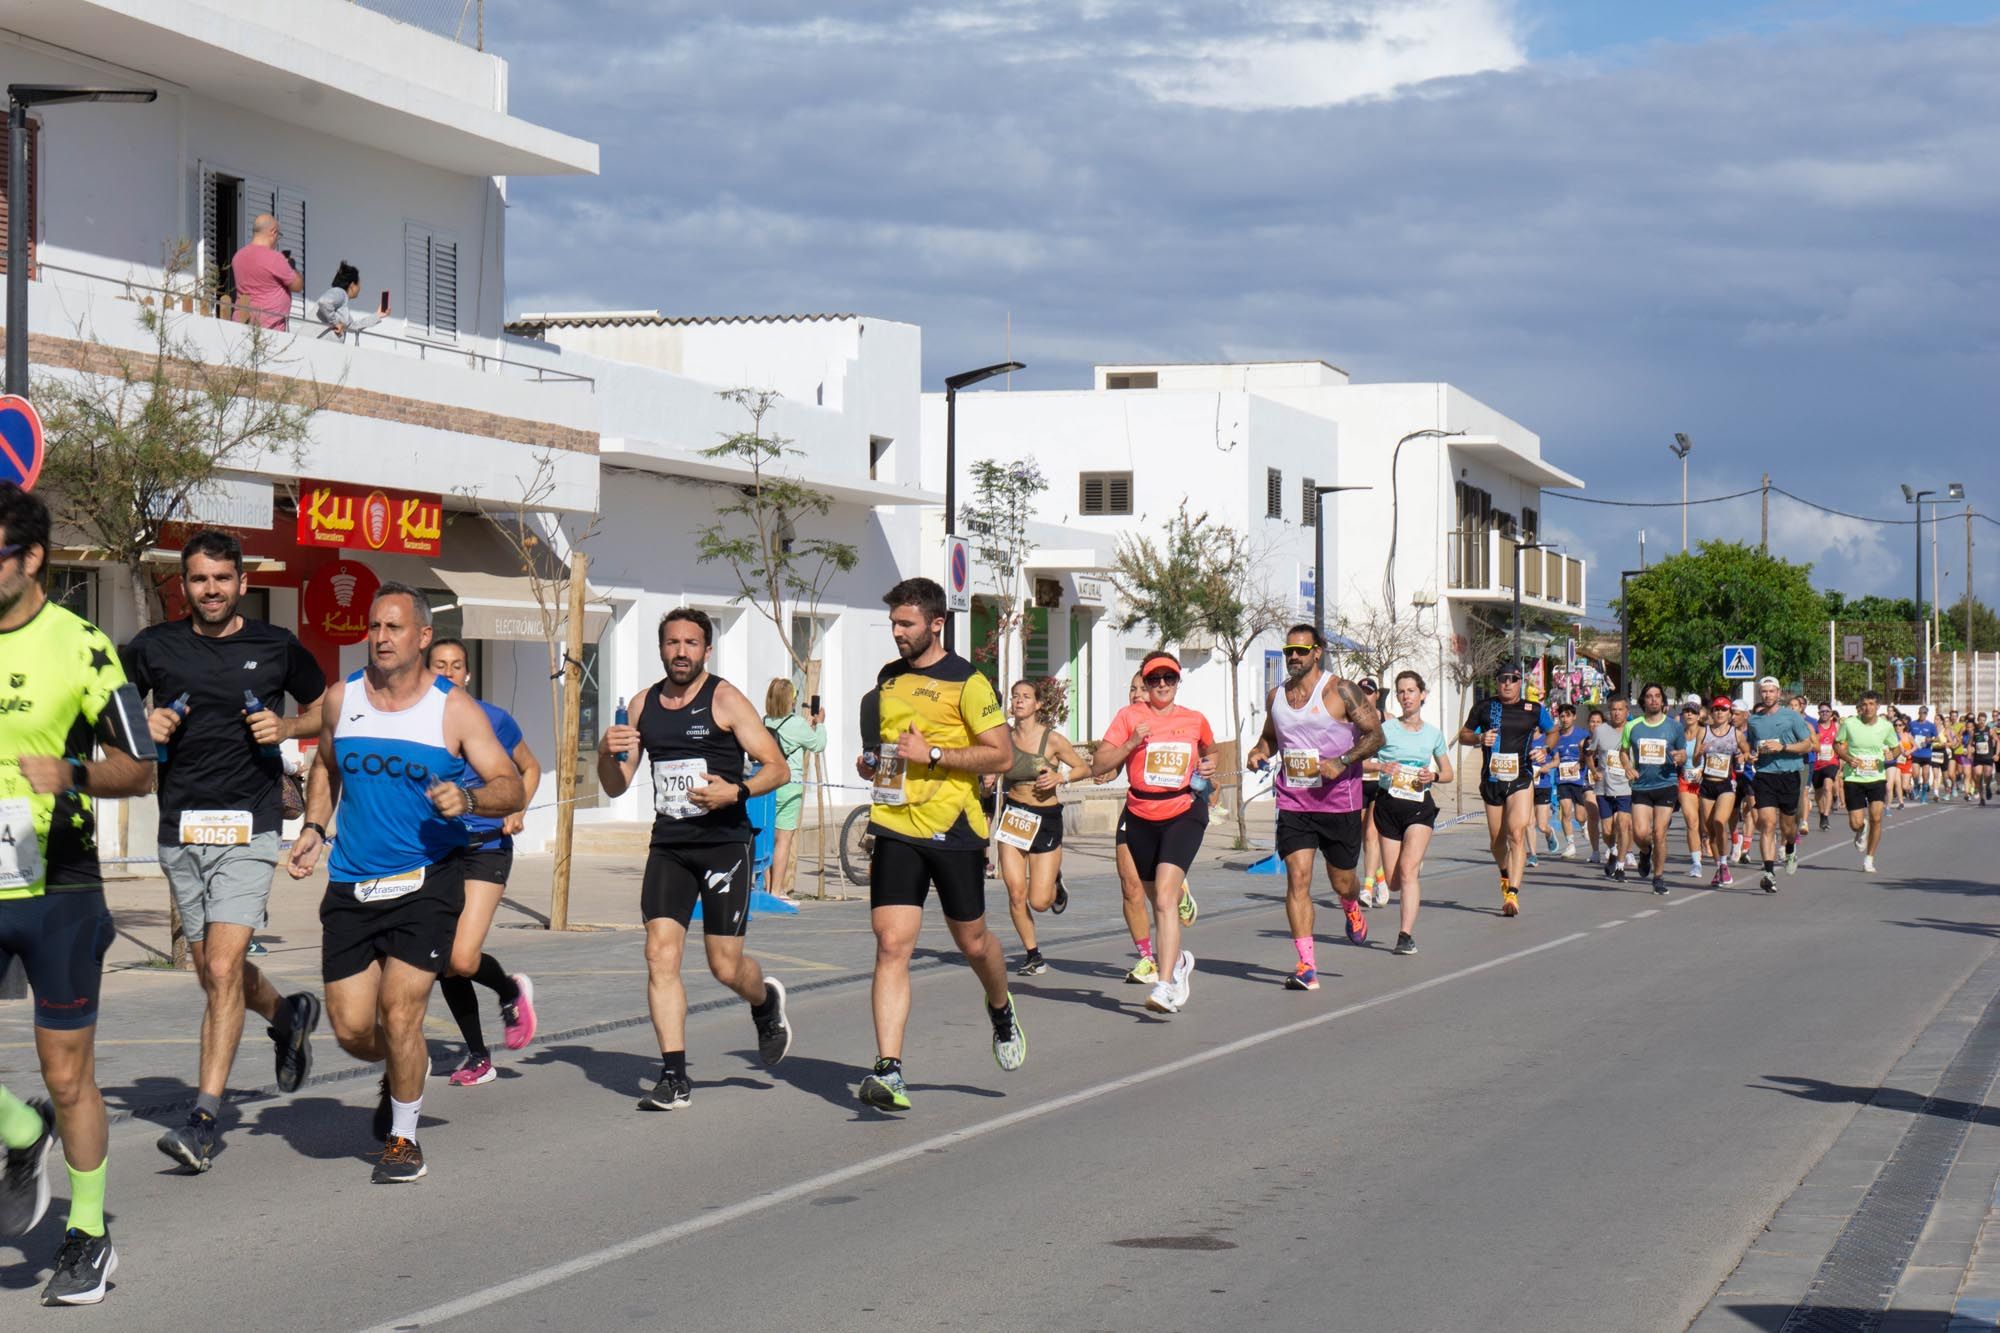 Media Maratón de Formenteta y 8k